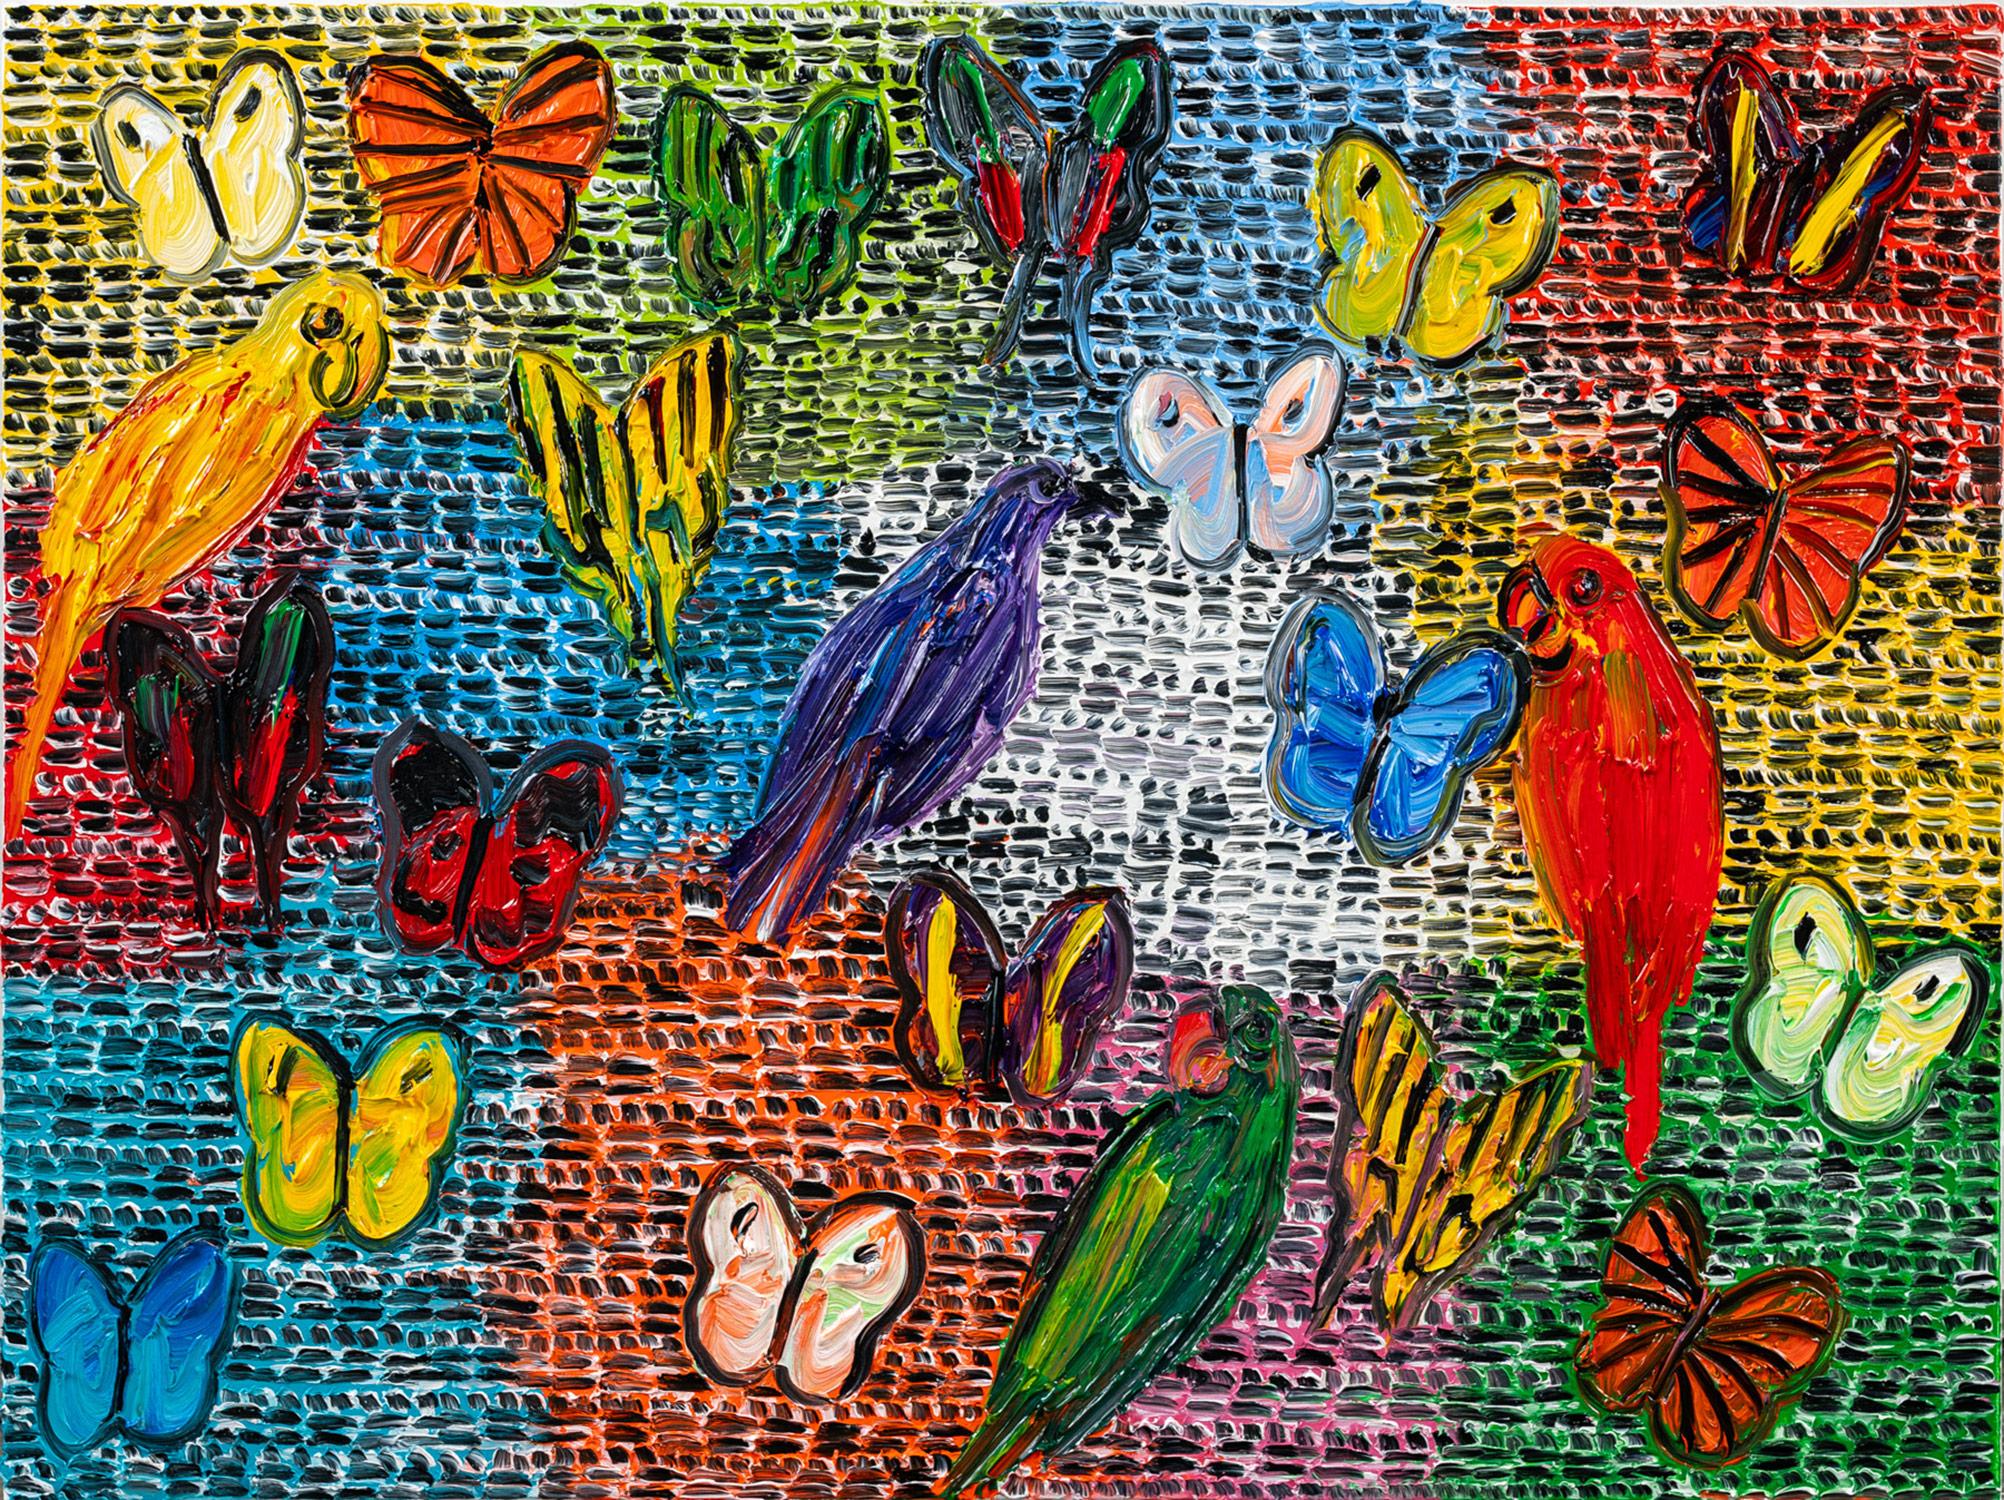 Animal Painting Hunt Slonem - « Gardiens et papillons », peinture à l'huile sur toile multicolore avec oiseaux